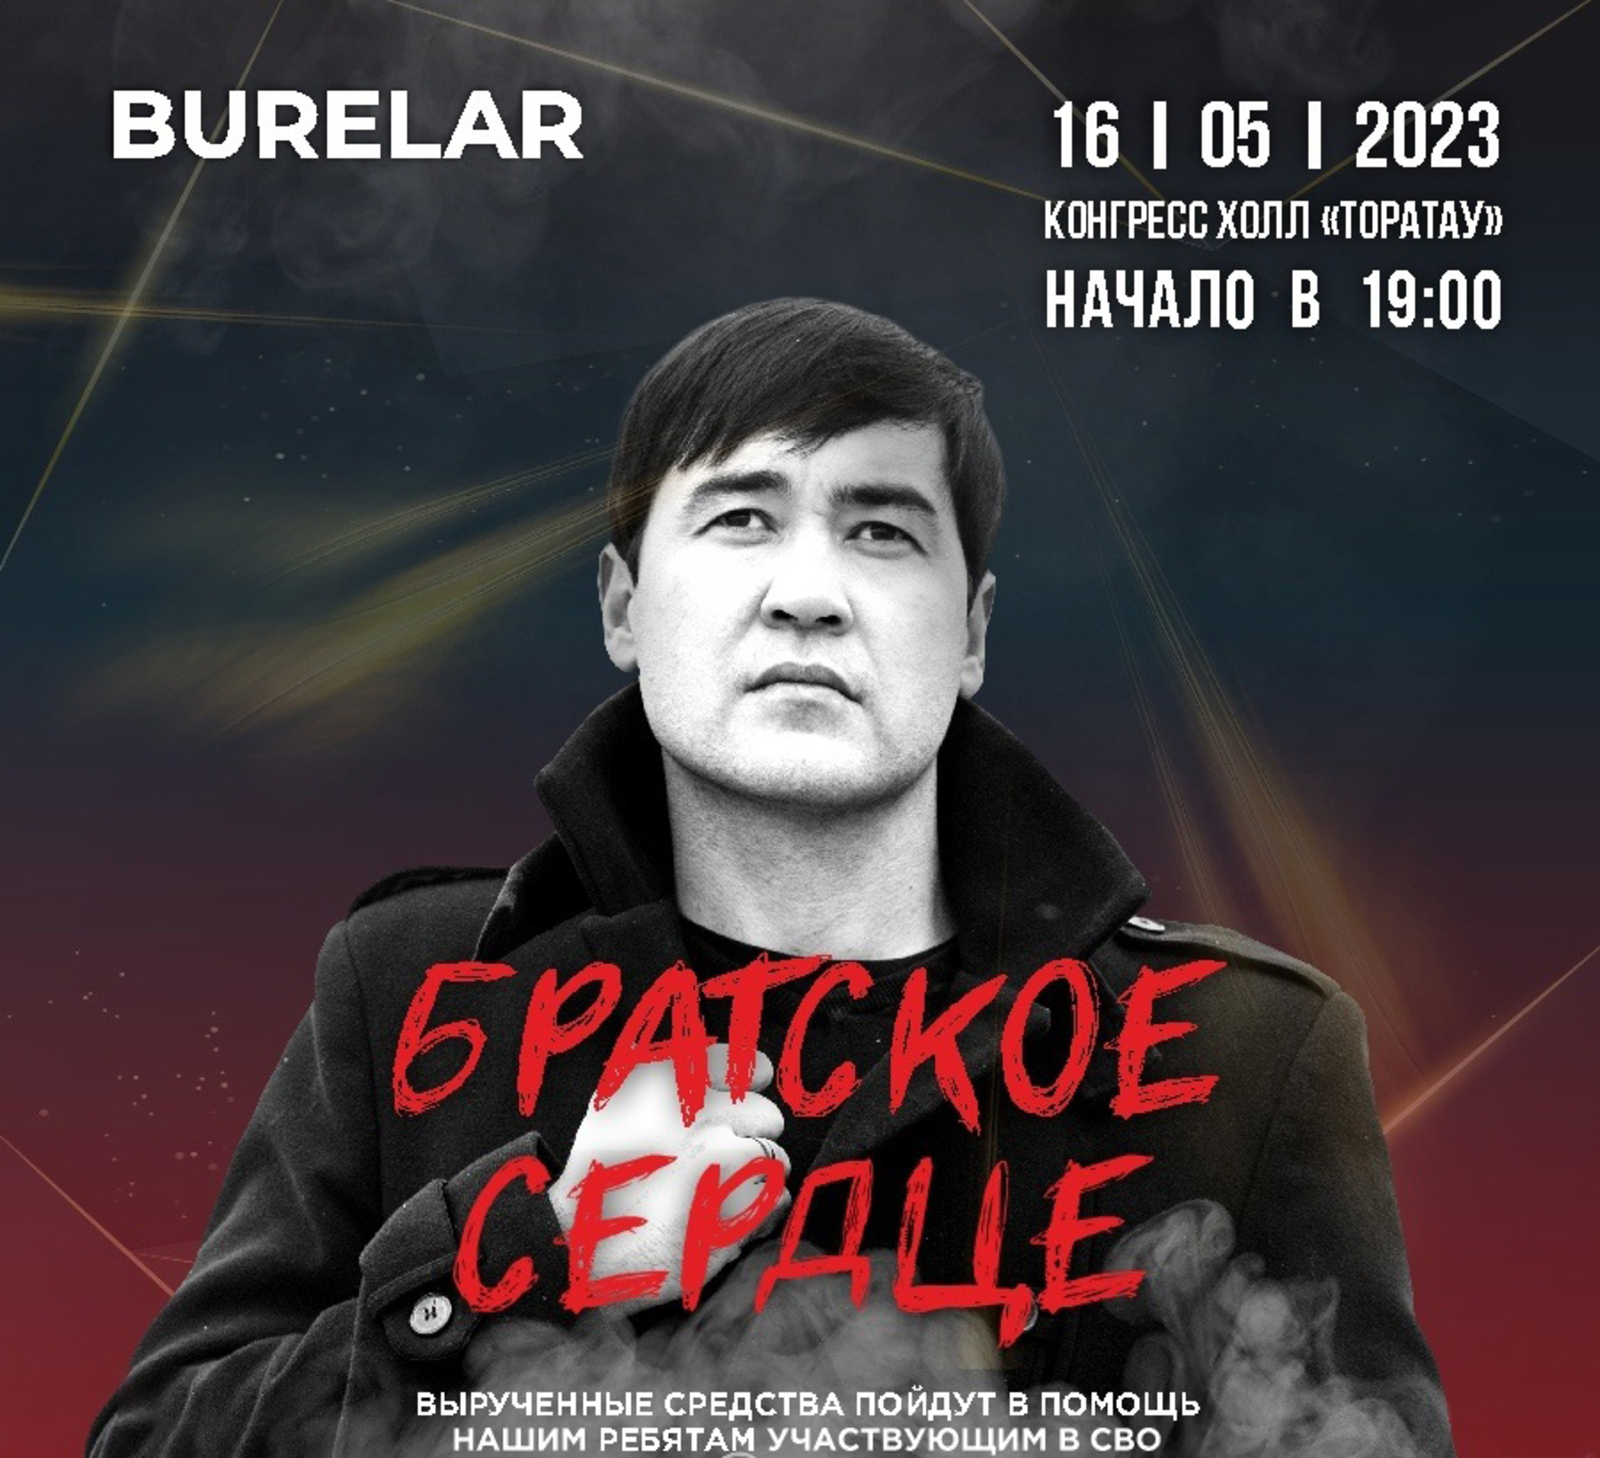 16 майҙа "Burelar" рок төркөмө хәйриә концерты ойоштора